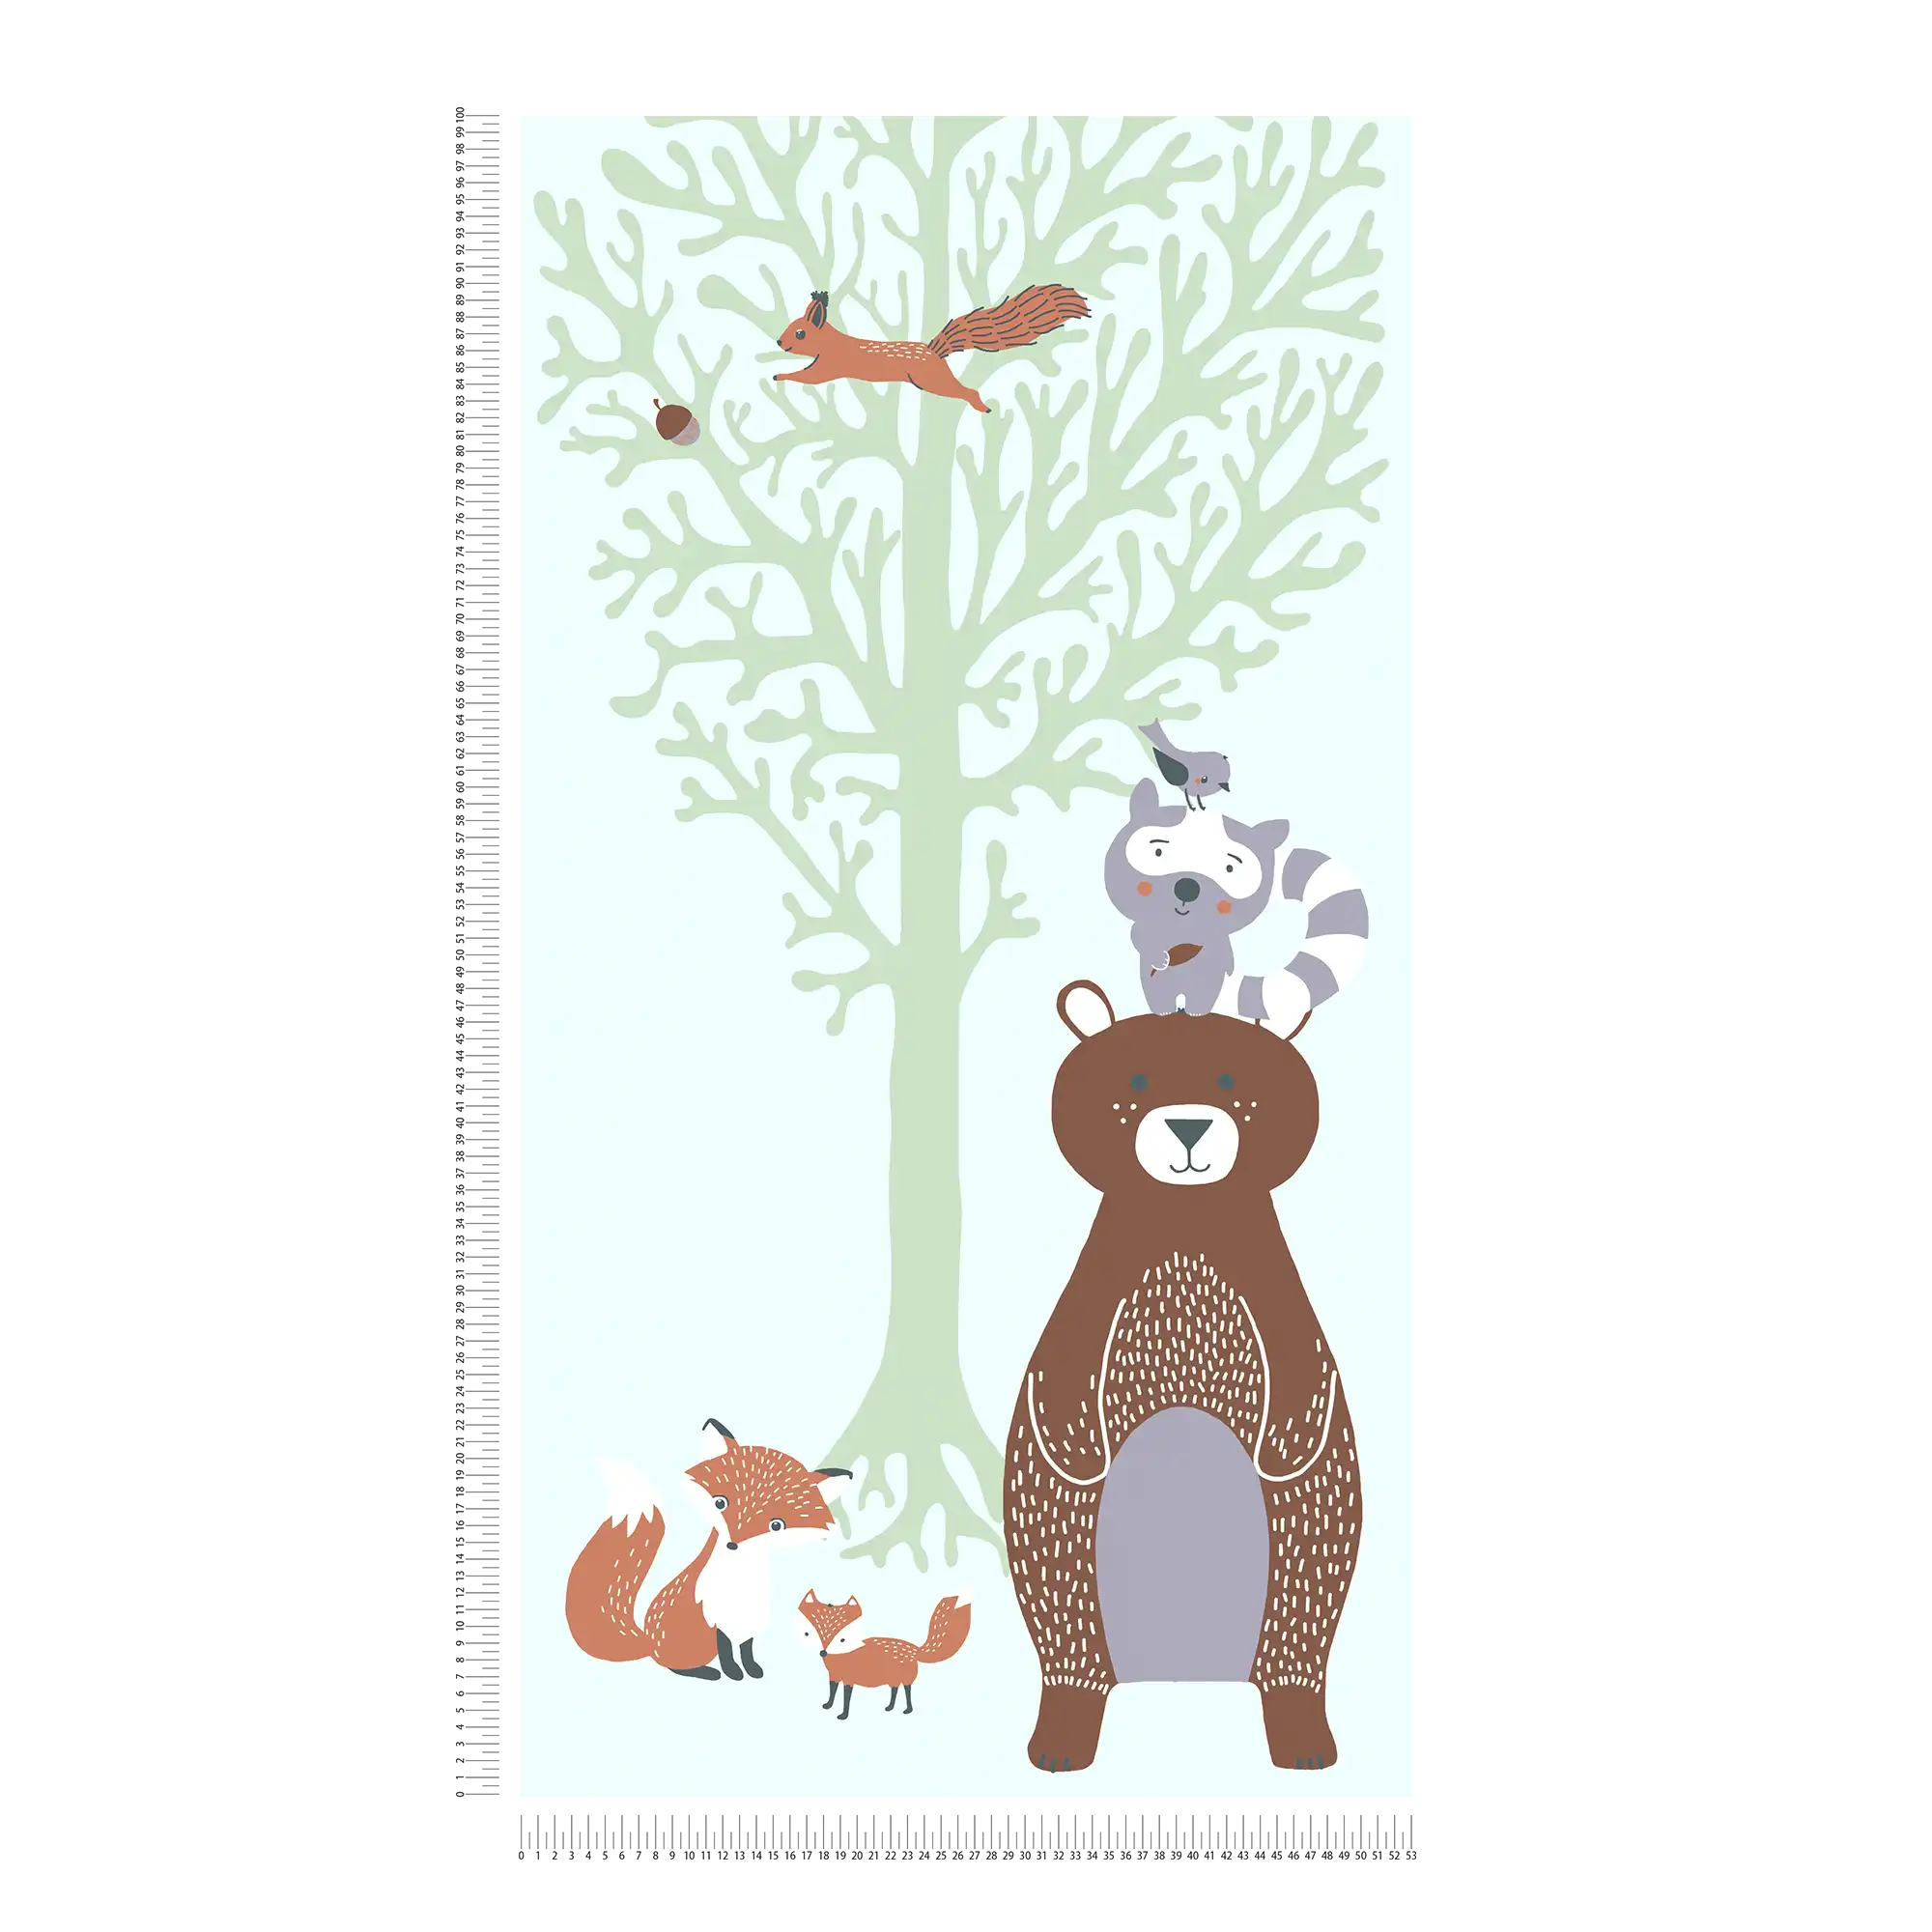             Papel pintado para la habitación de los niños animales del bosque - verde, marrón, gris
        